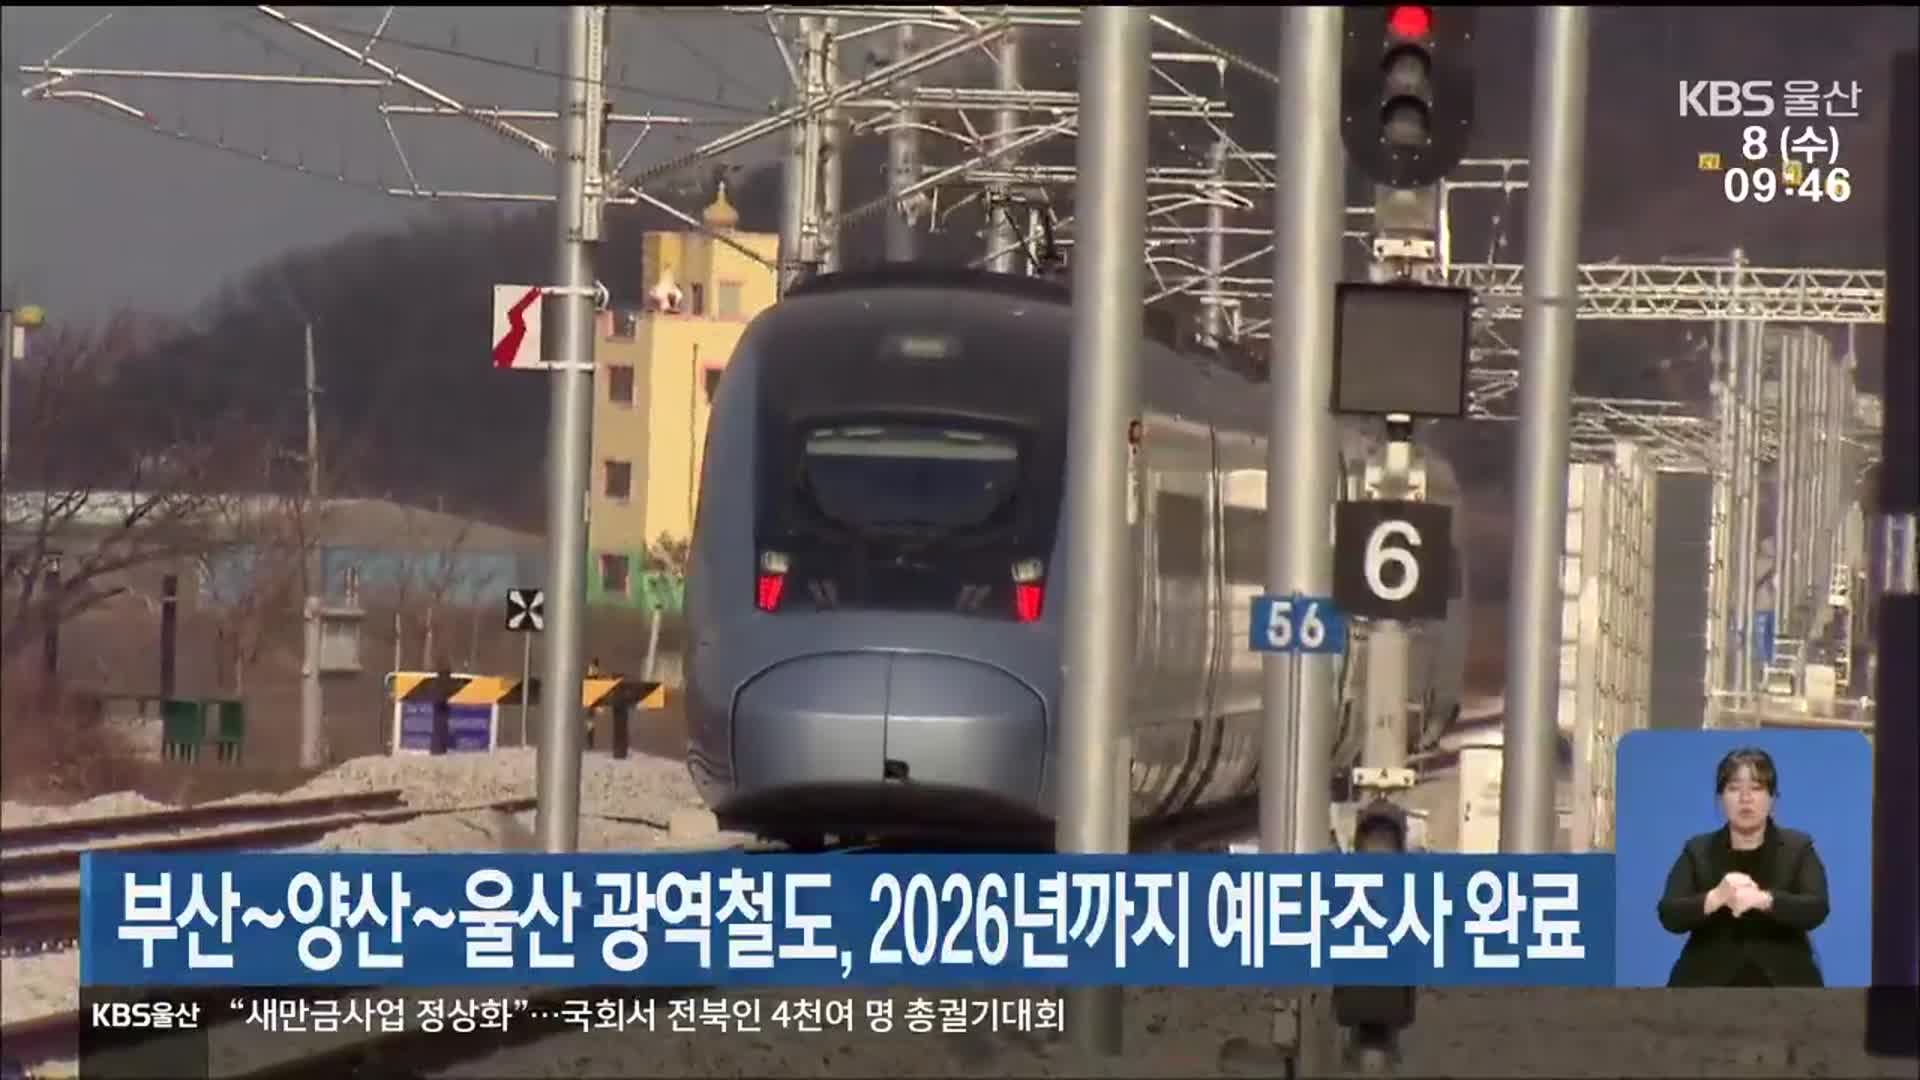 부산~양산~울산 광역철도, 2026년까지 예타조사 완료